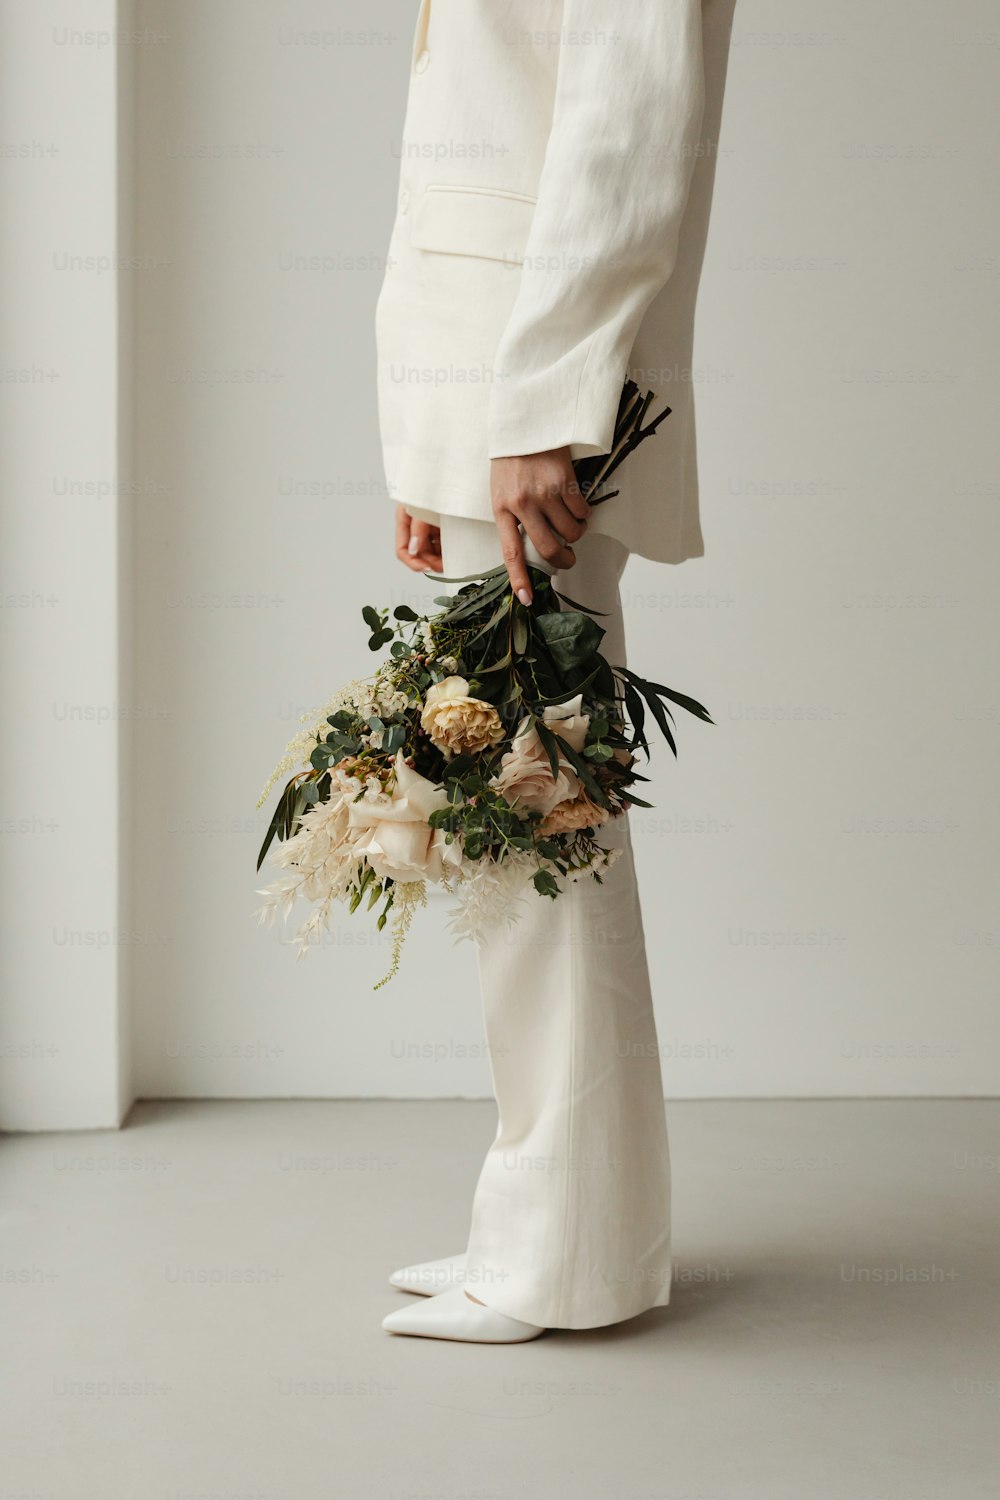 uma pessoa em um terno branco segurando um buquê de flores